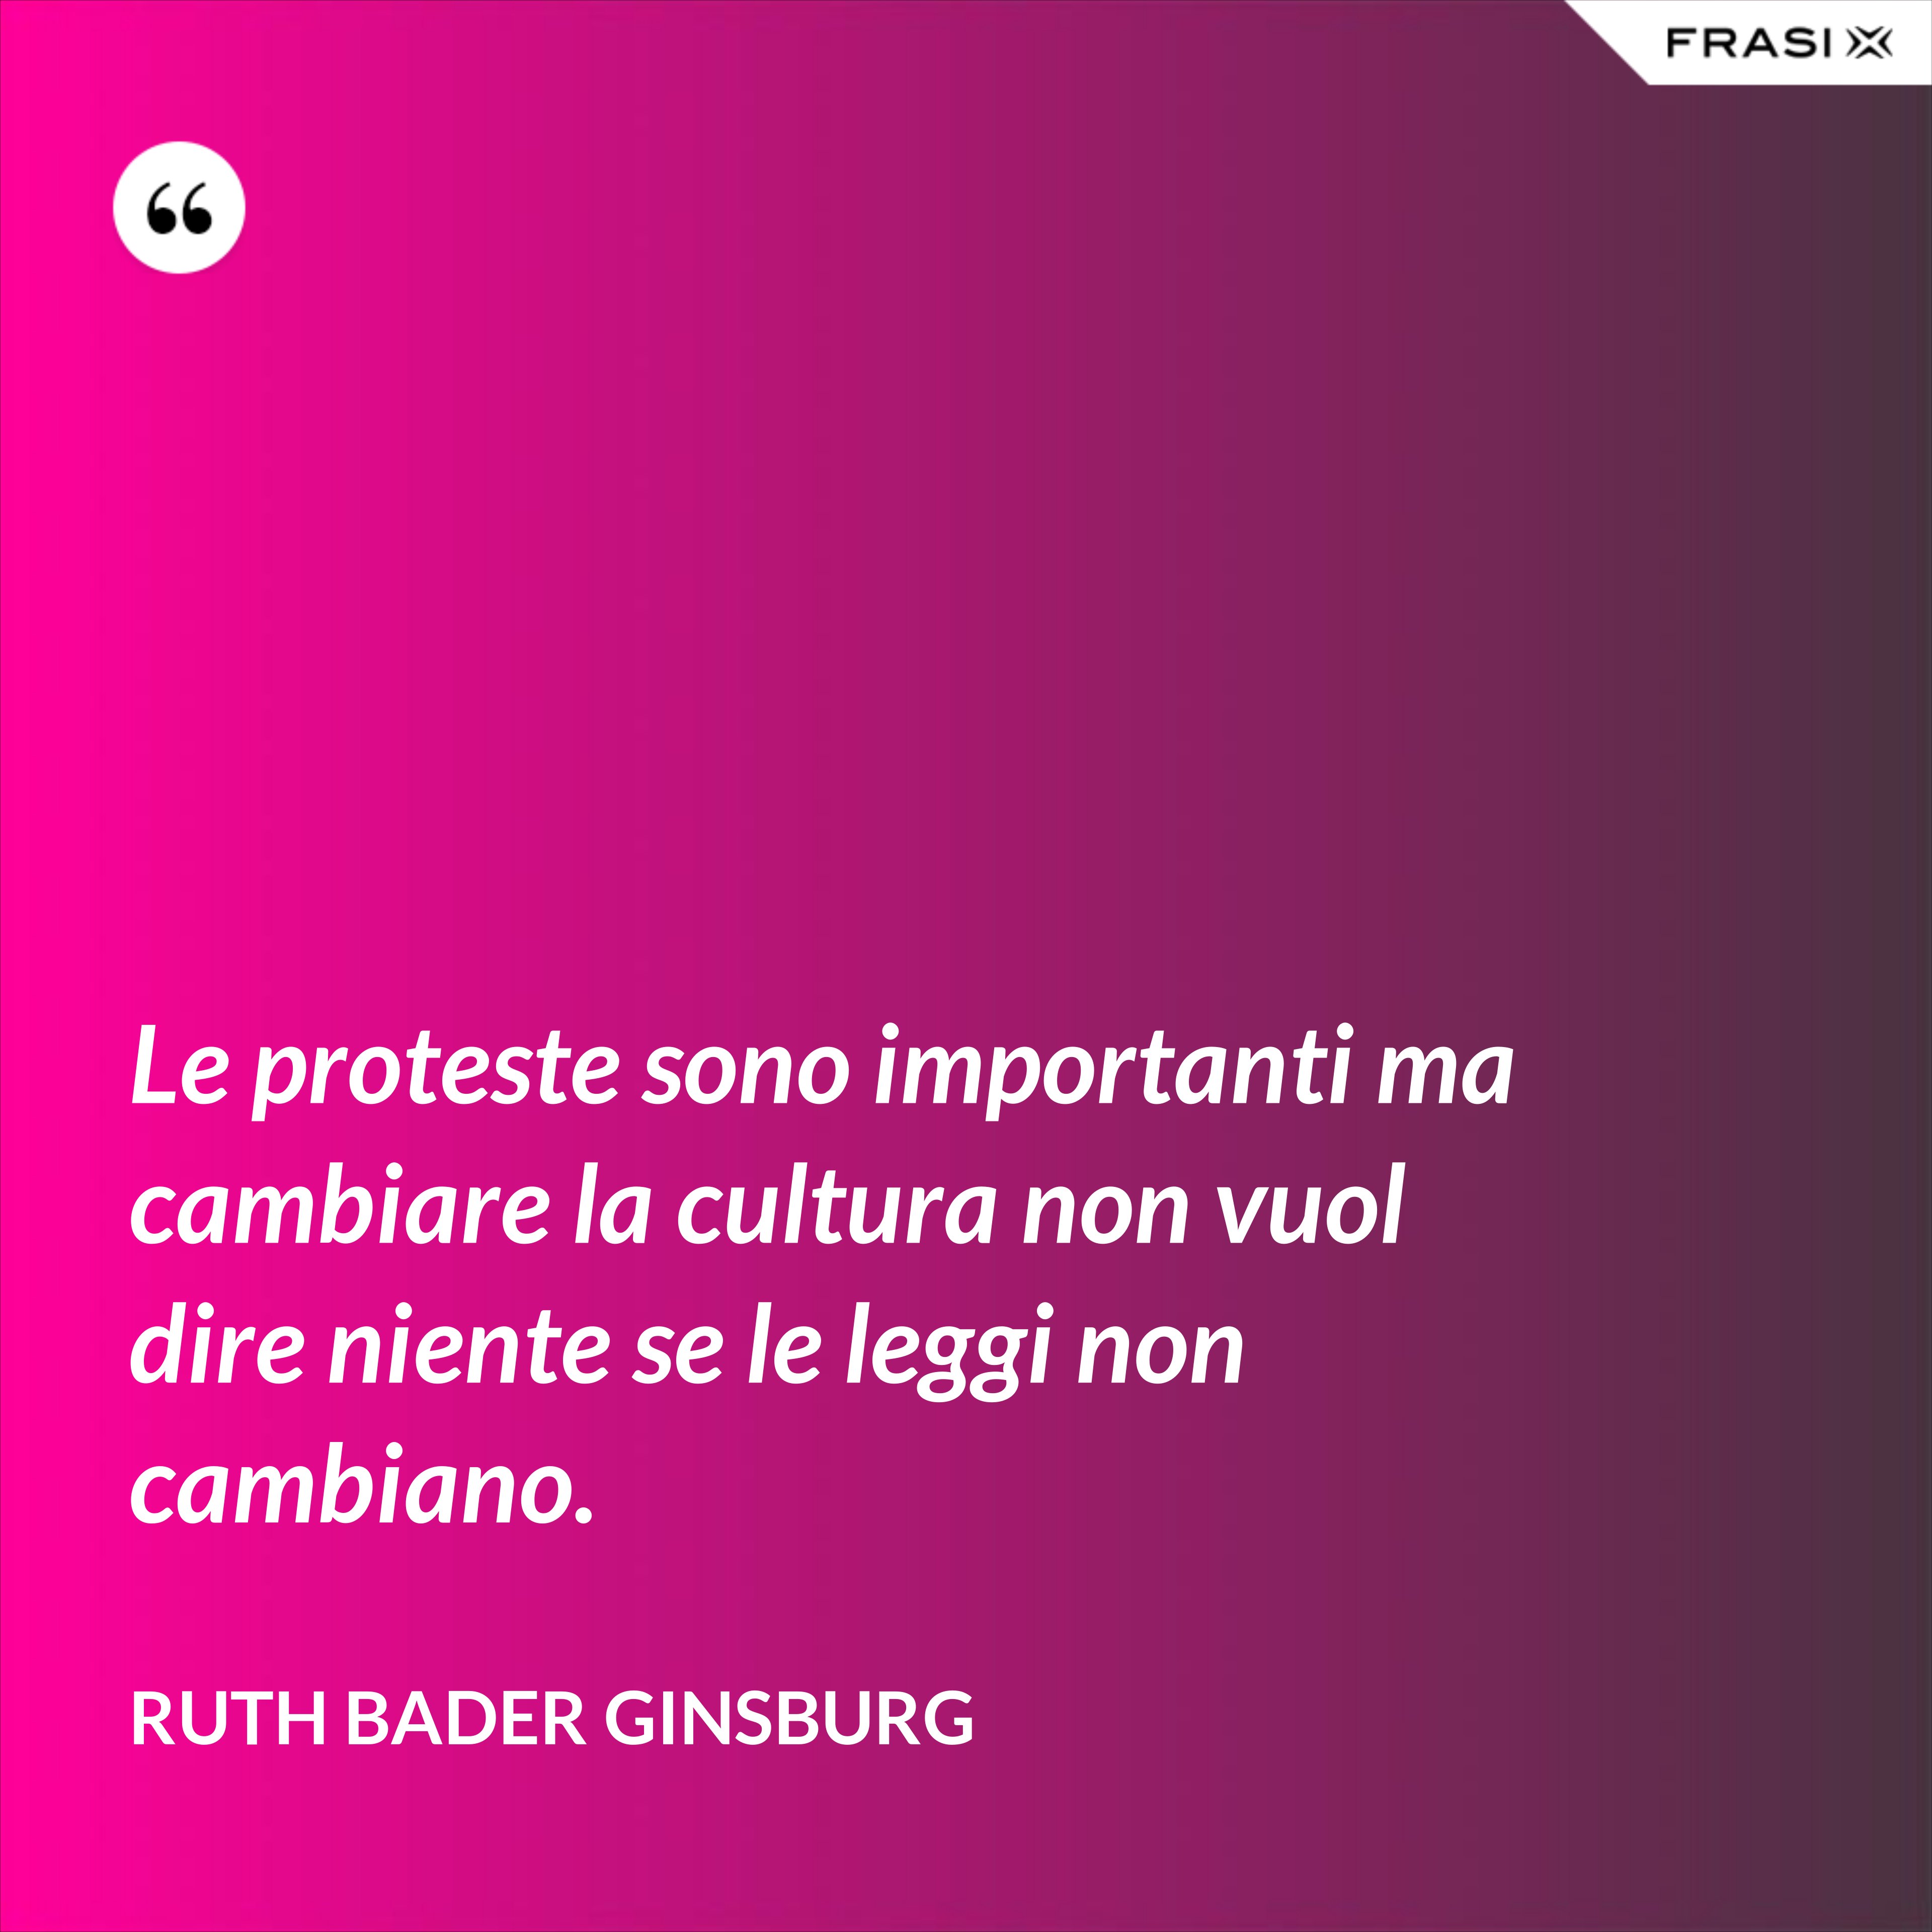 Le proteste sono importanti ma cambiare la cultura non vuol dire niente se le leggi non cambiano. - Ruth Bader Ginsburg